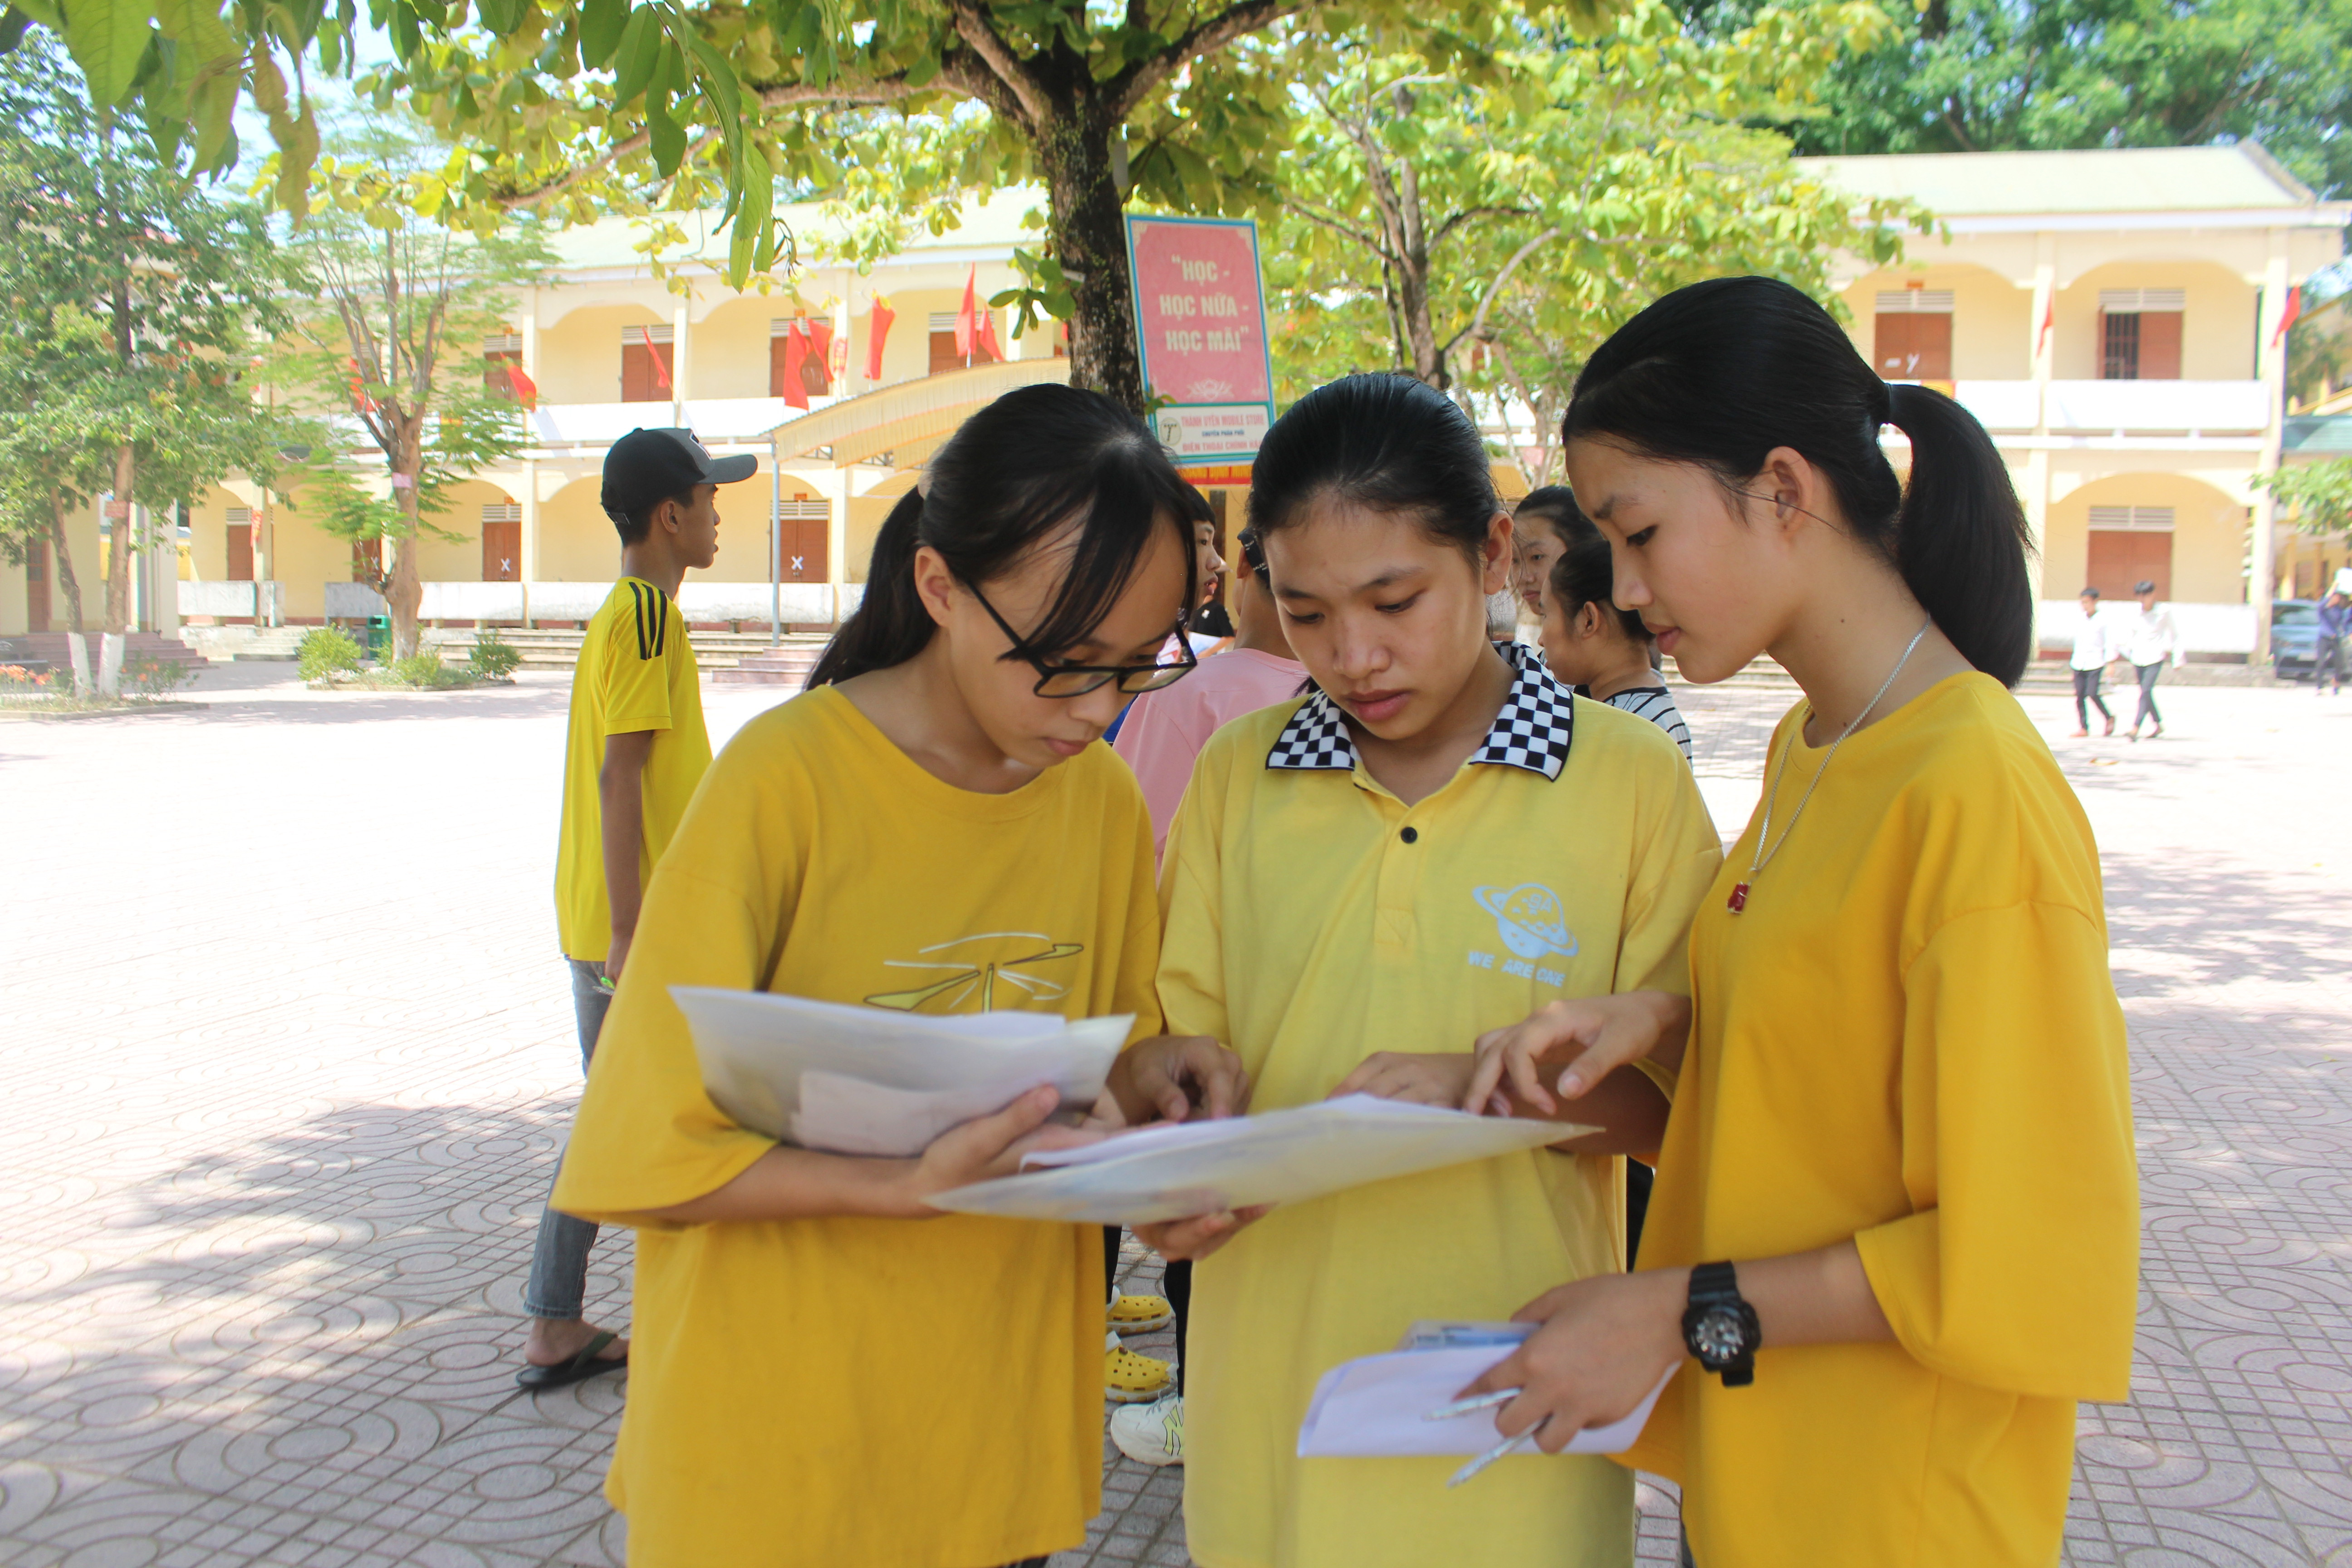  Học sinh trao đổi bài thi sau buổi thi môn Toán tại trường THPT Con Cuông. Ảnh: Bá Hậu